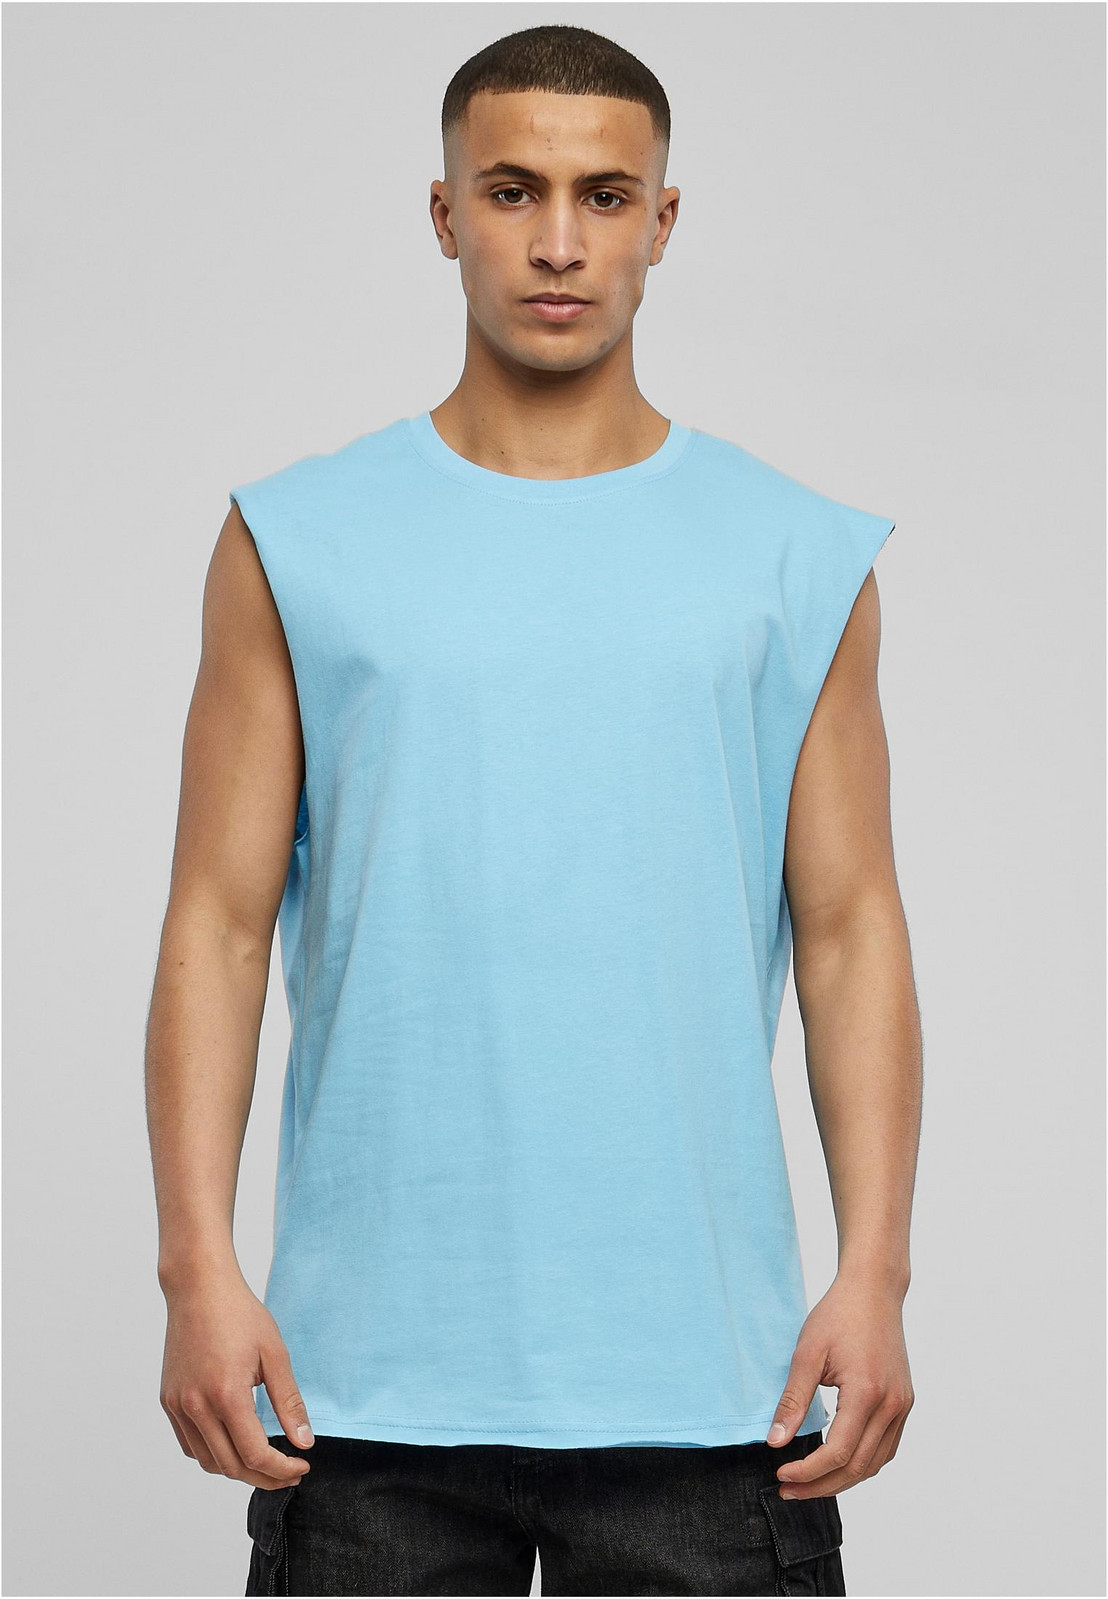 Baltické modré tričko bez rukávů s otevřeným okrajem